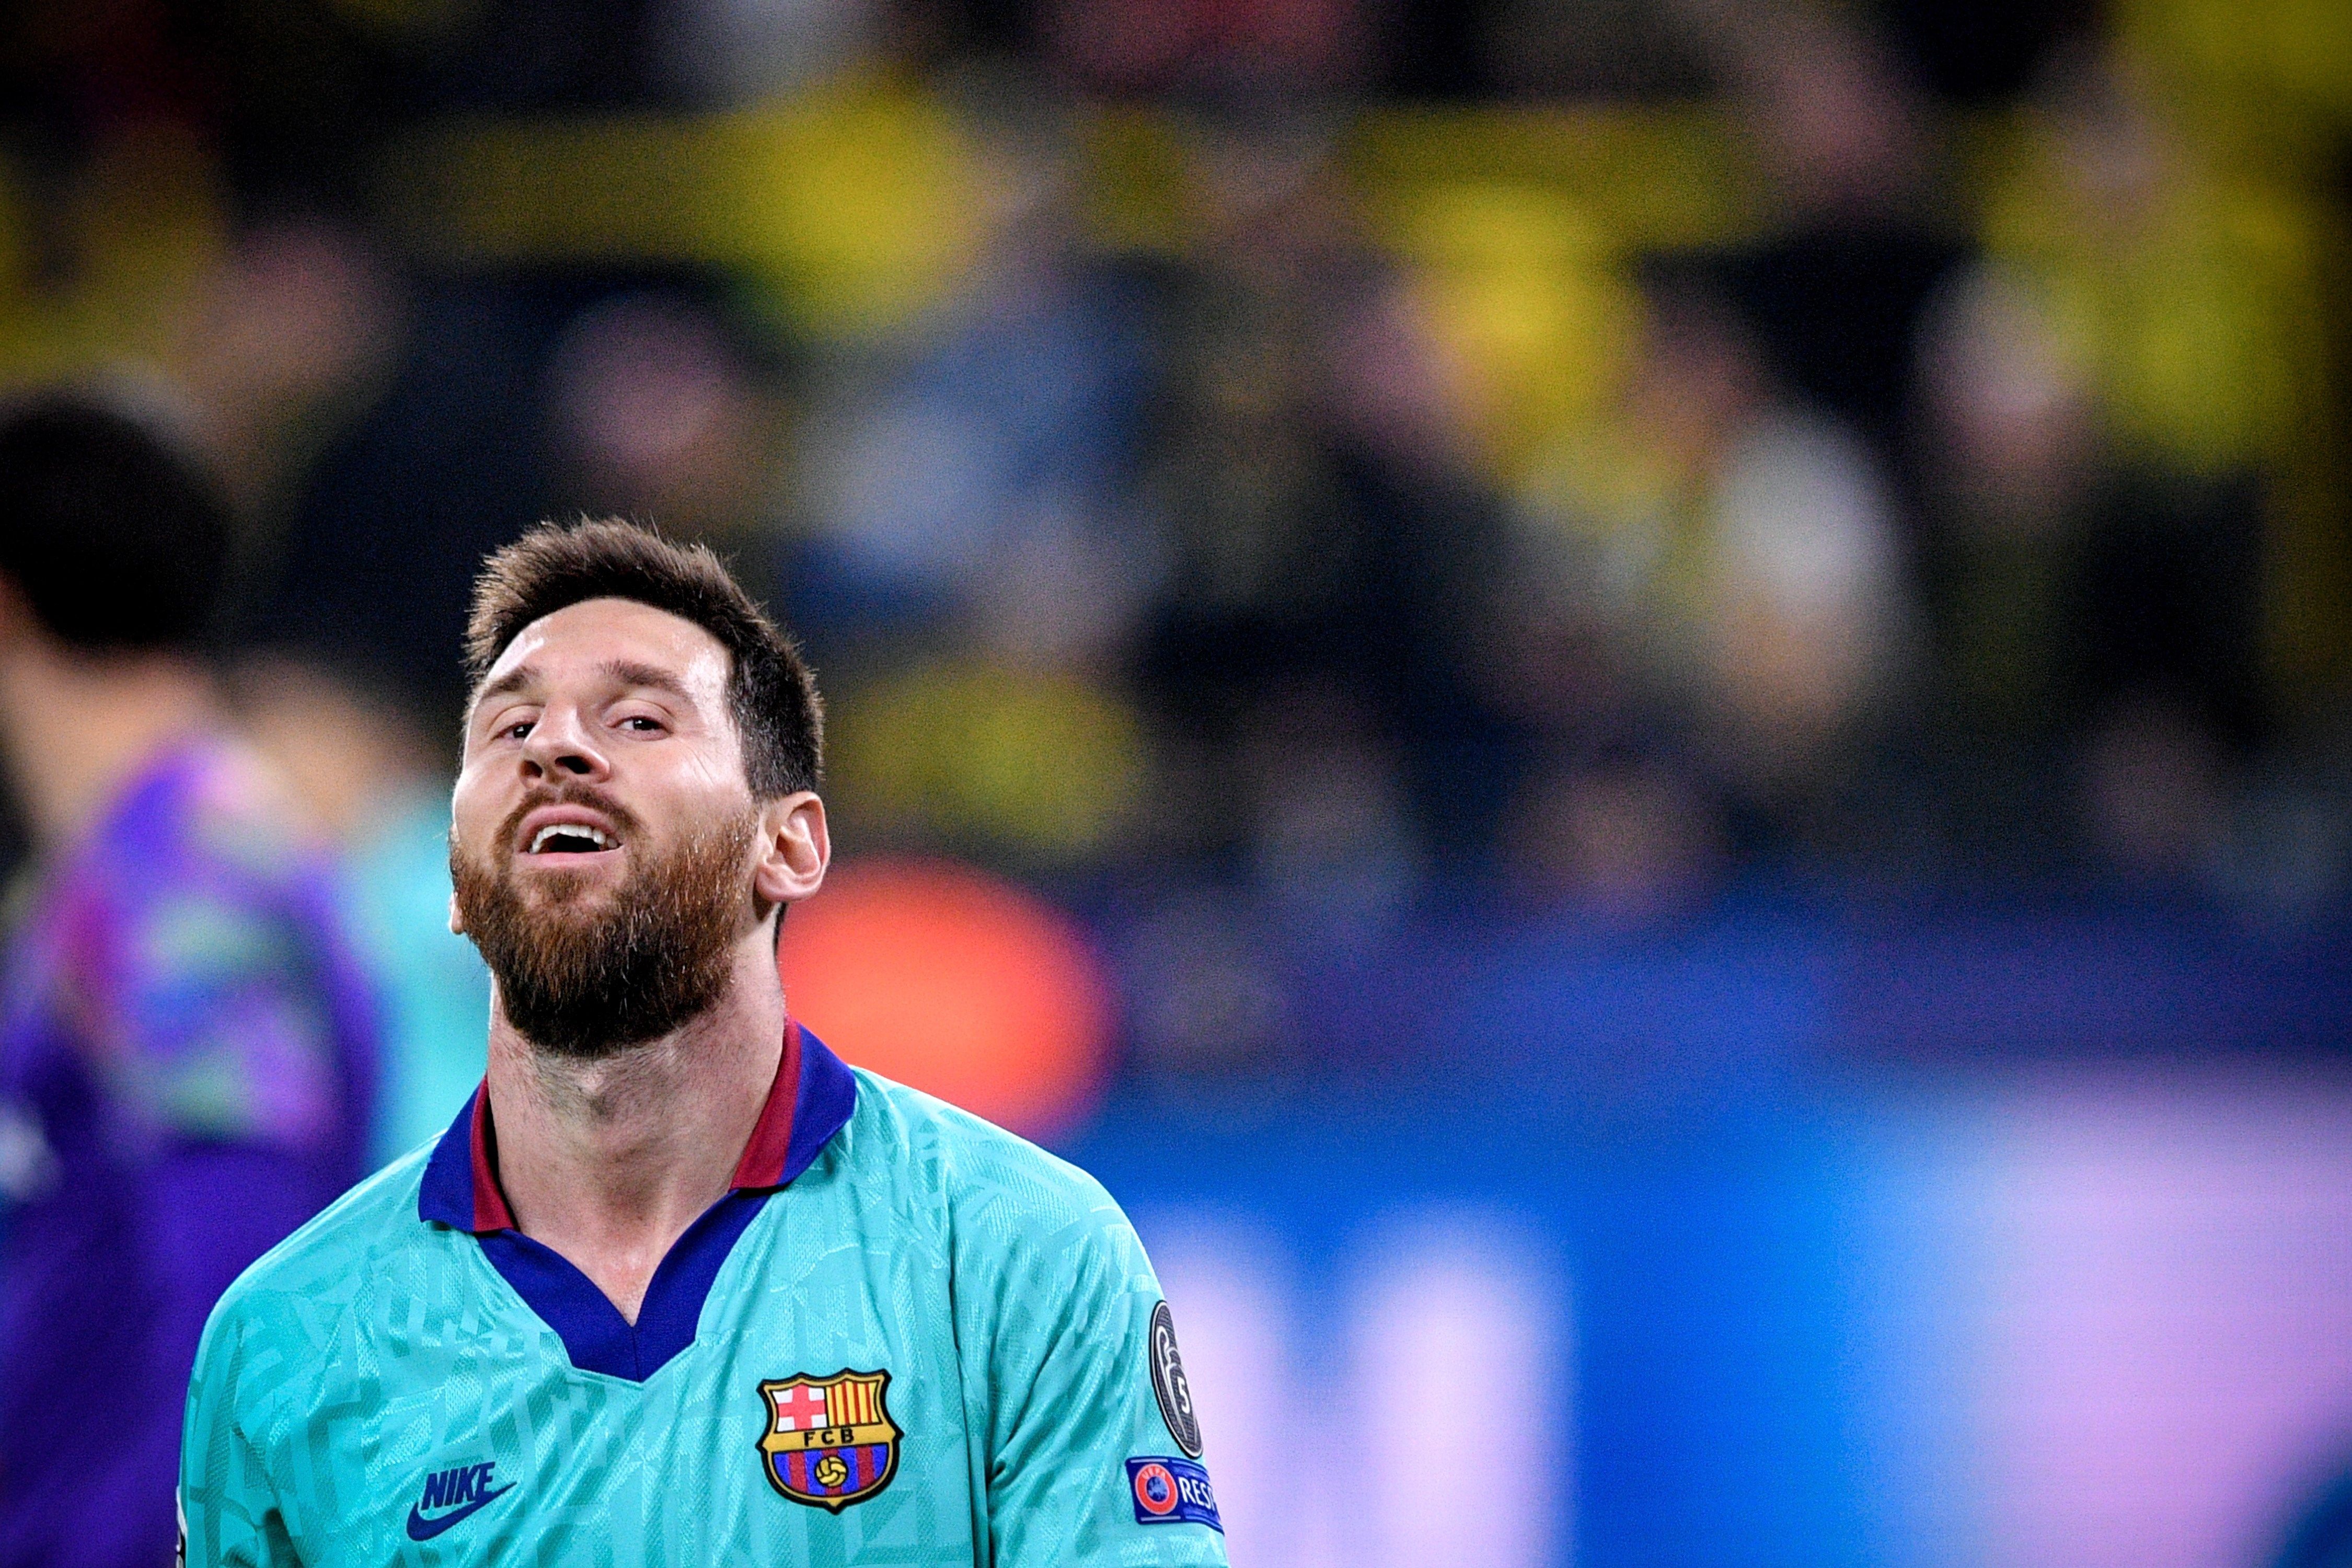 El Barça hauria camuflat 3,7 milions del salari de Messi pagant-los al pare del jugador